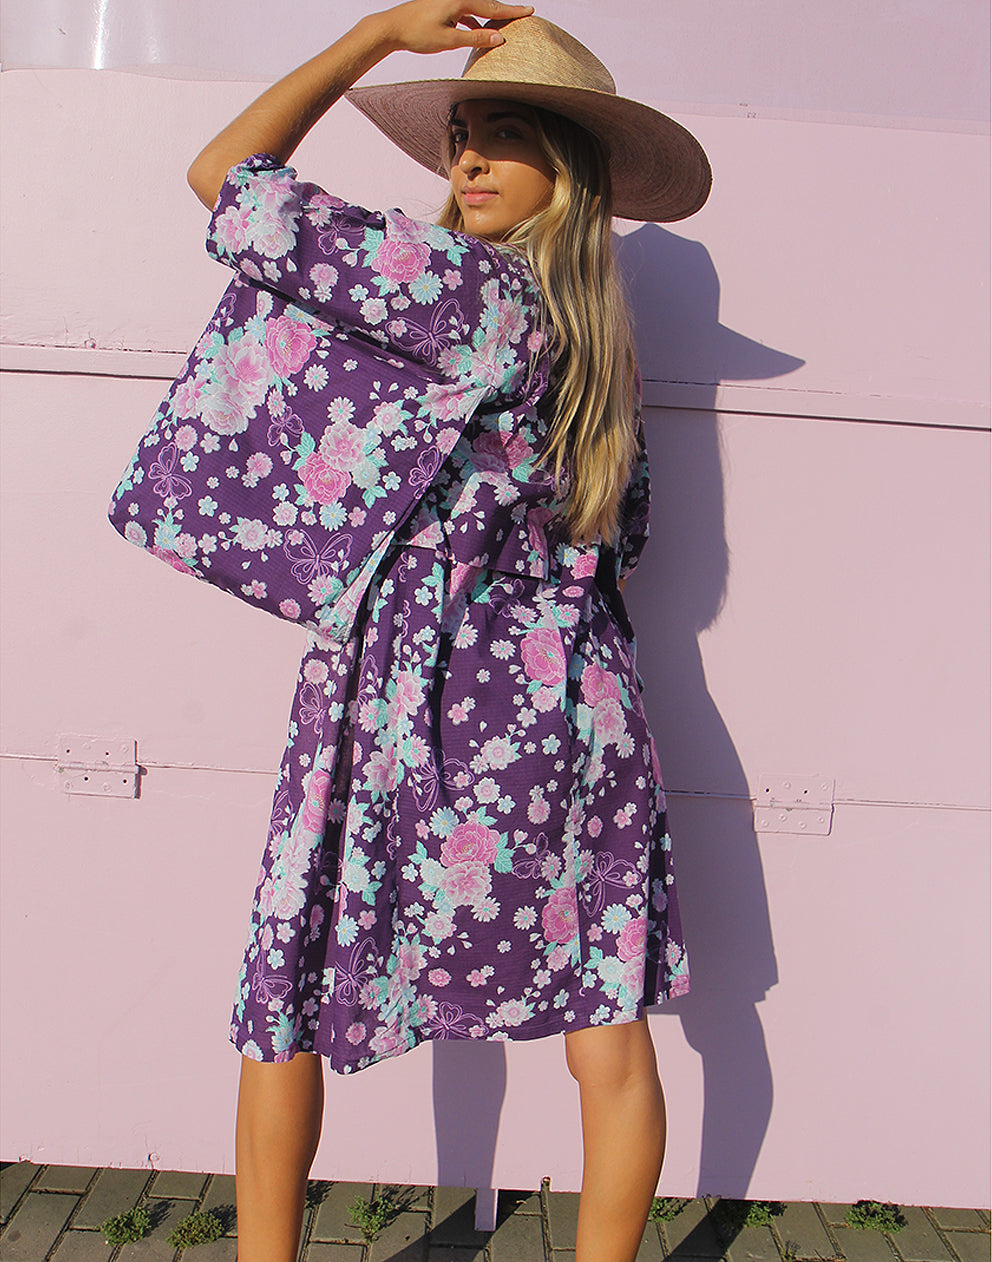 Kimono Robe in Purple Floral Printed Cotton